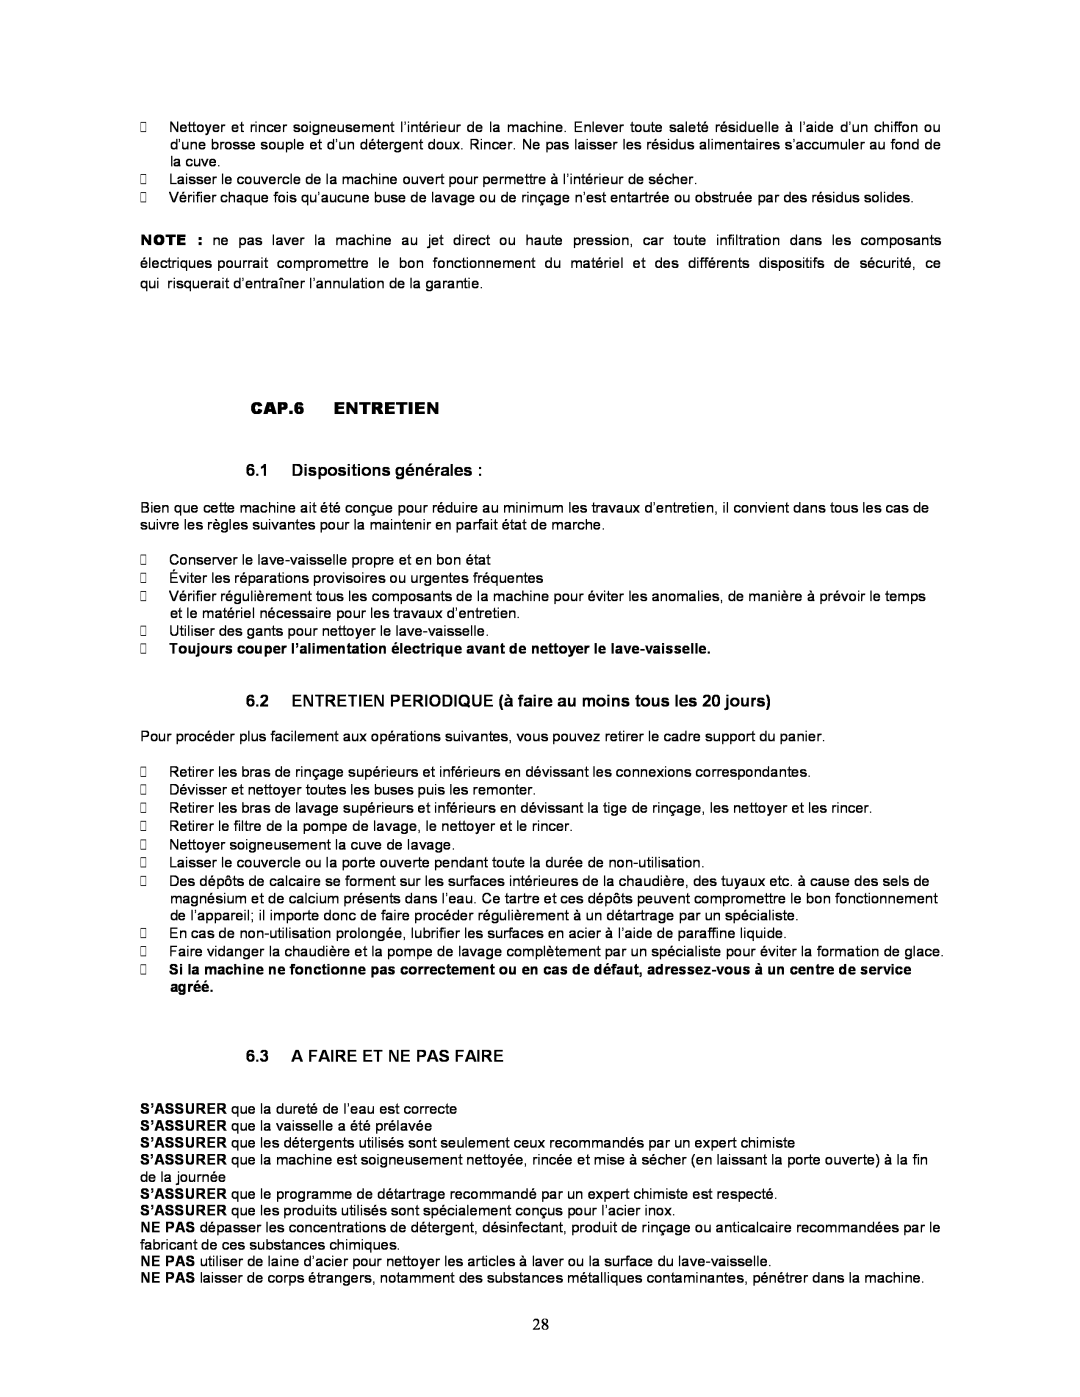 Jettech Metal Products FX-44 operation manual CAP.6 ENTRETIEN 6.1 Dispositions générales, A Faire Et Ne Pas Faire 